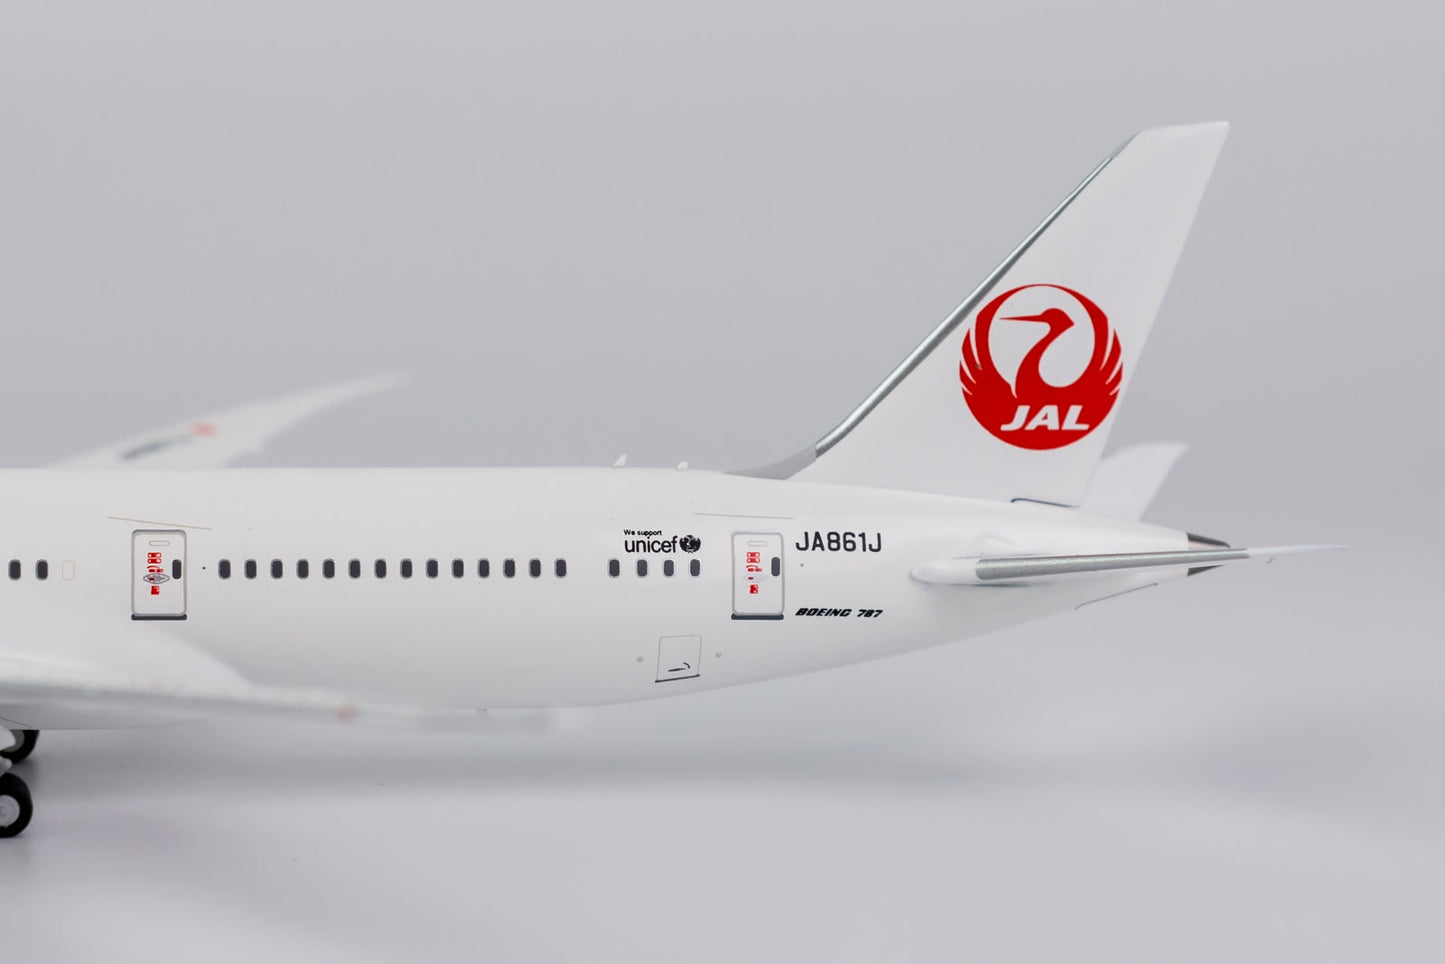 1/400 Japan Airlines B 787-9 Dreamliner "Oneworld" NG Models 55083